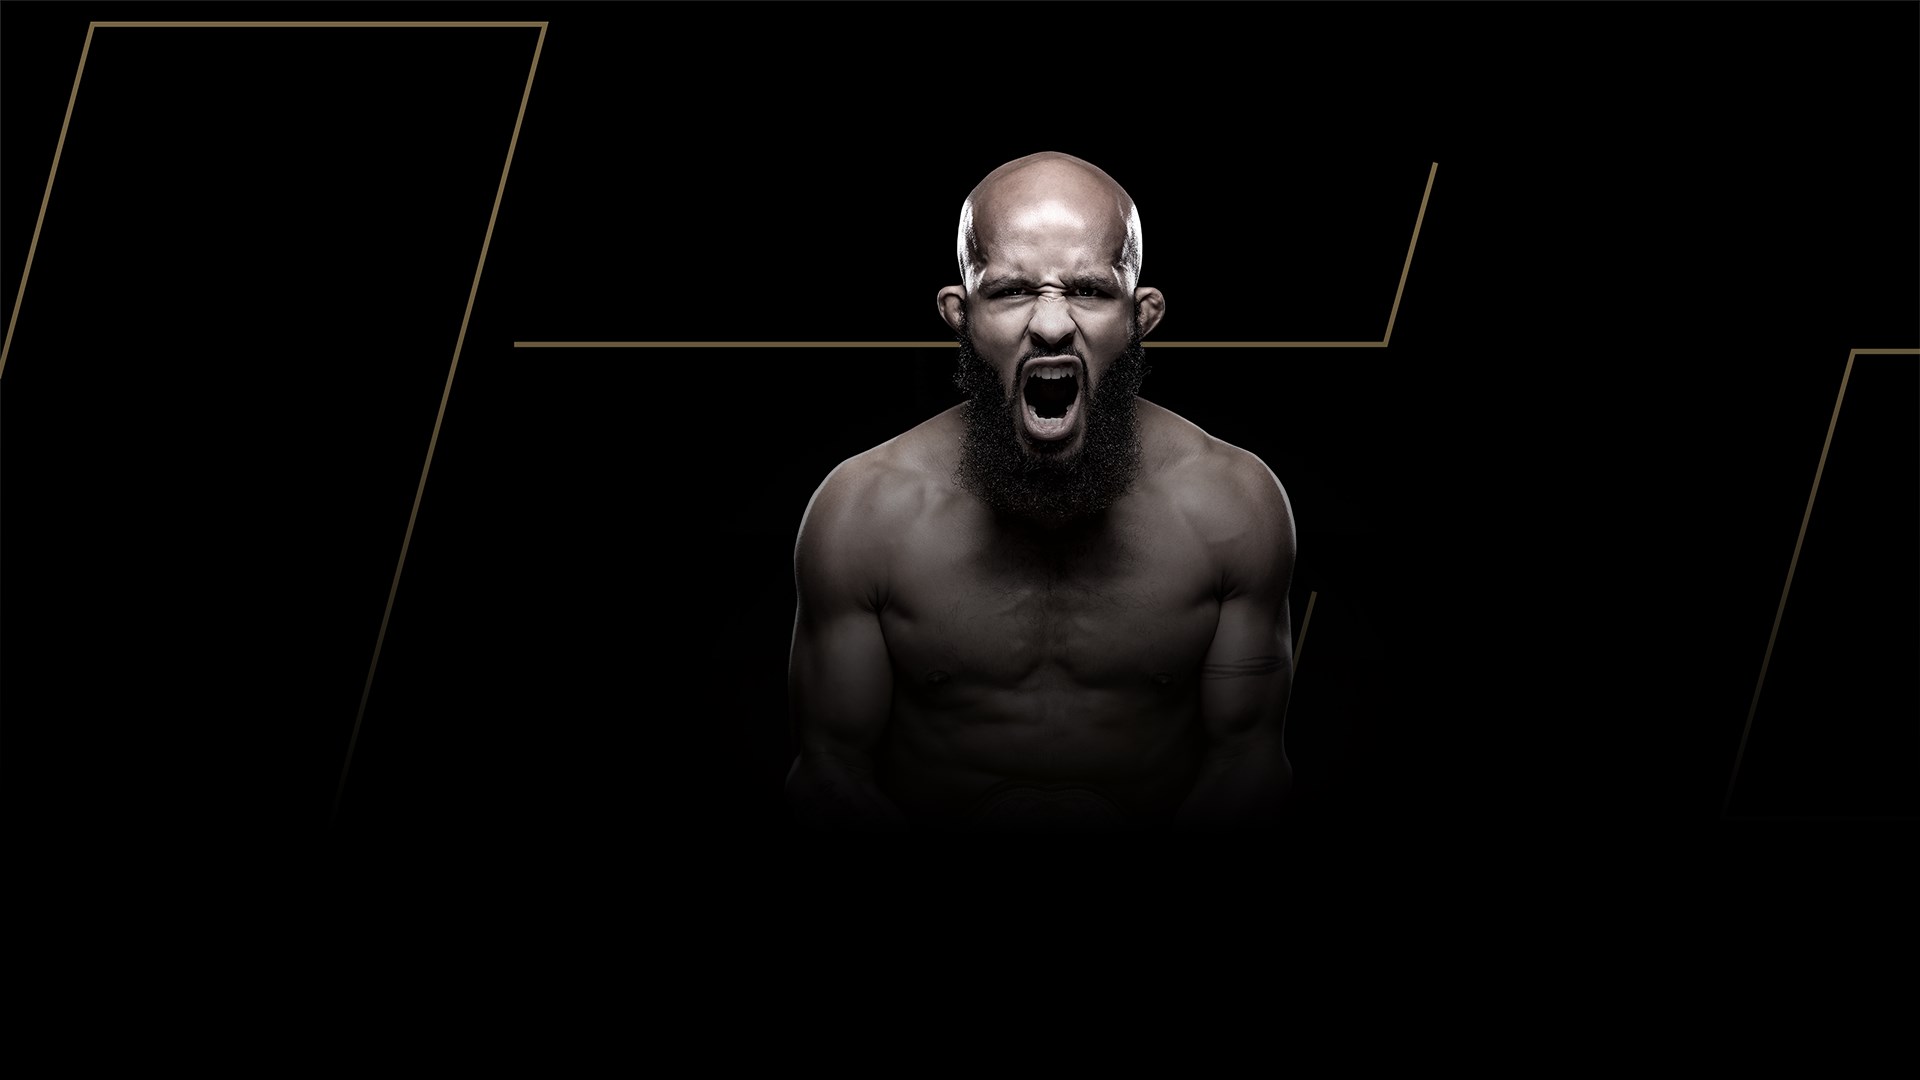 Contenido de EA SPORTS™ UFC® 3 Icon Edition